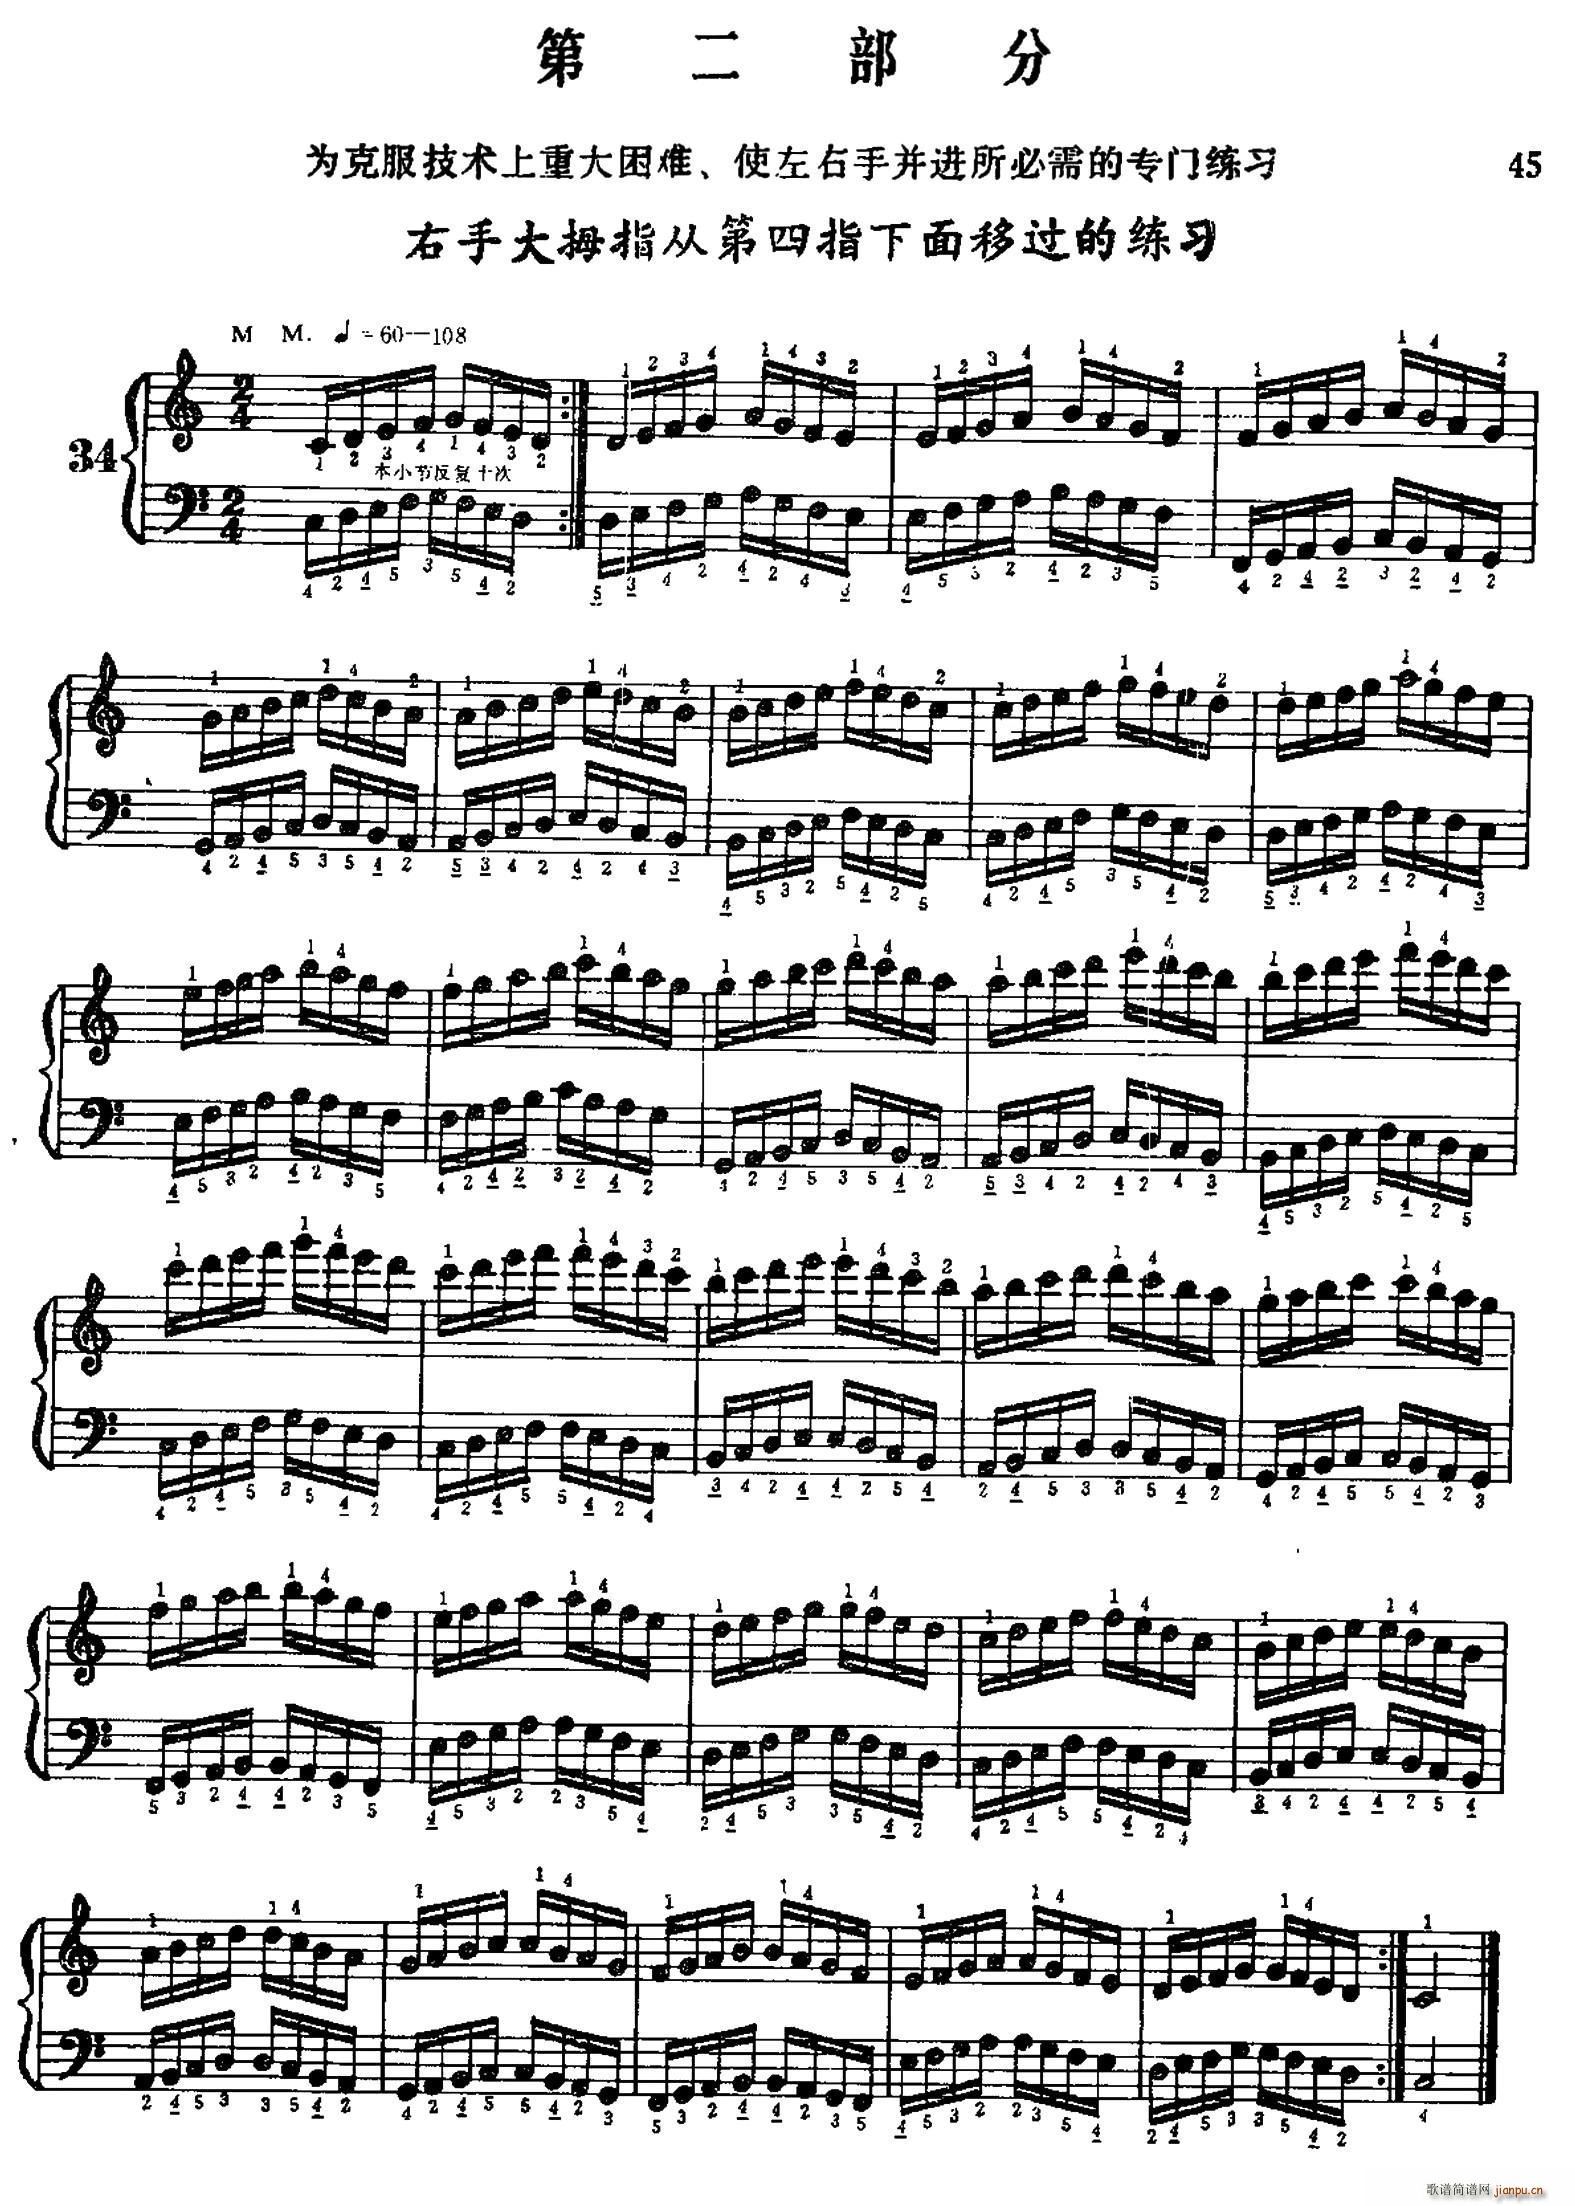 手风琴手指练习 第二部分 右手大拇指从第四指下面移过的练习(手风琴谱)1